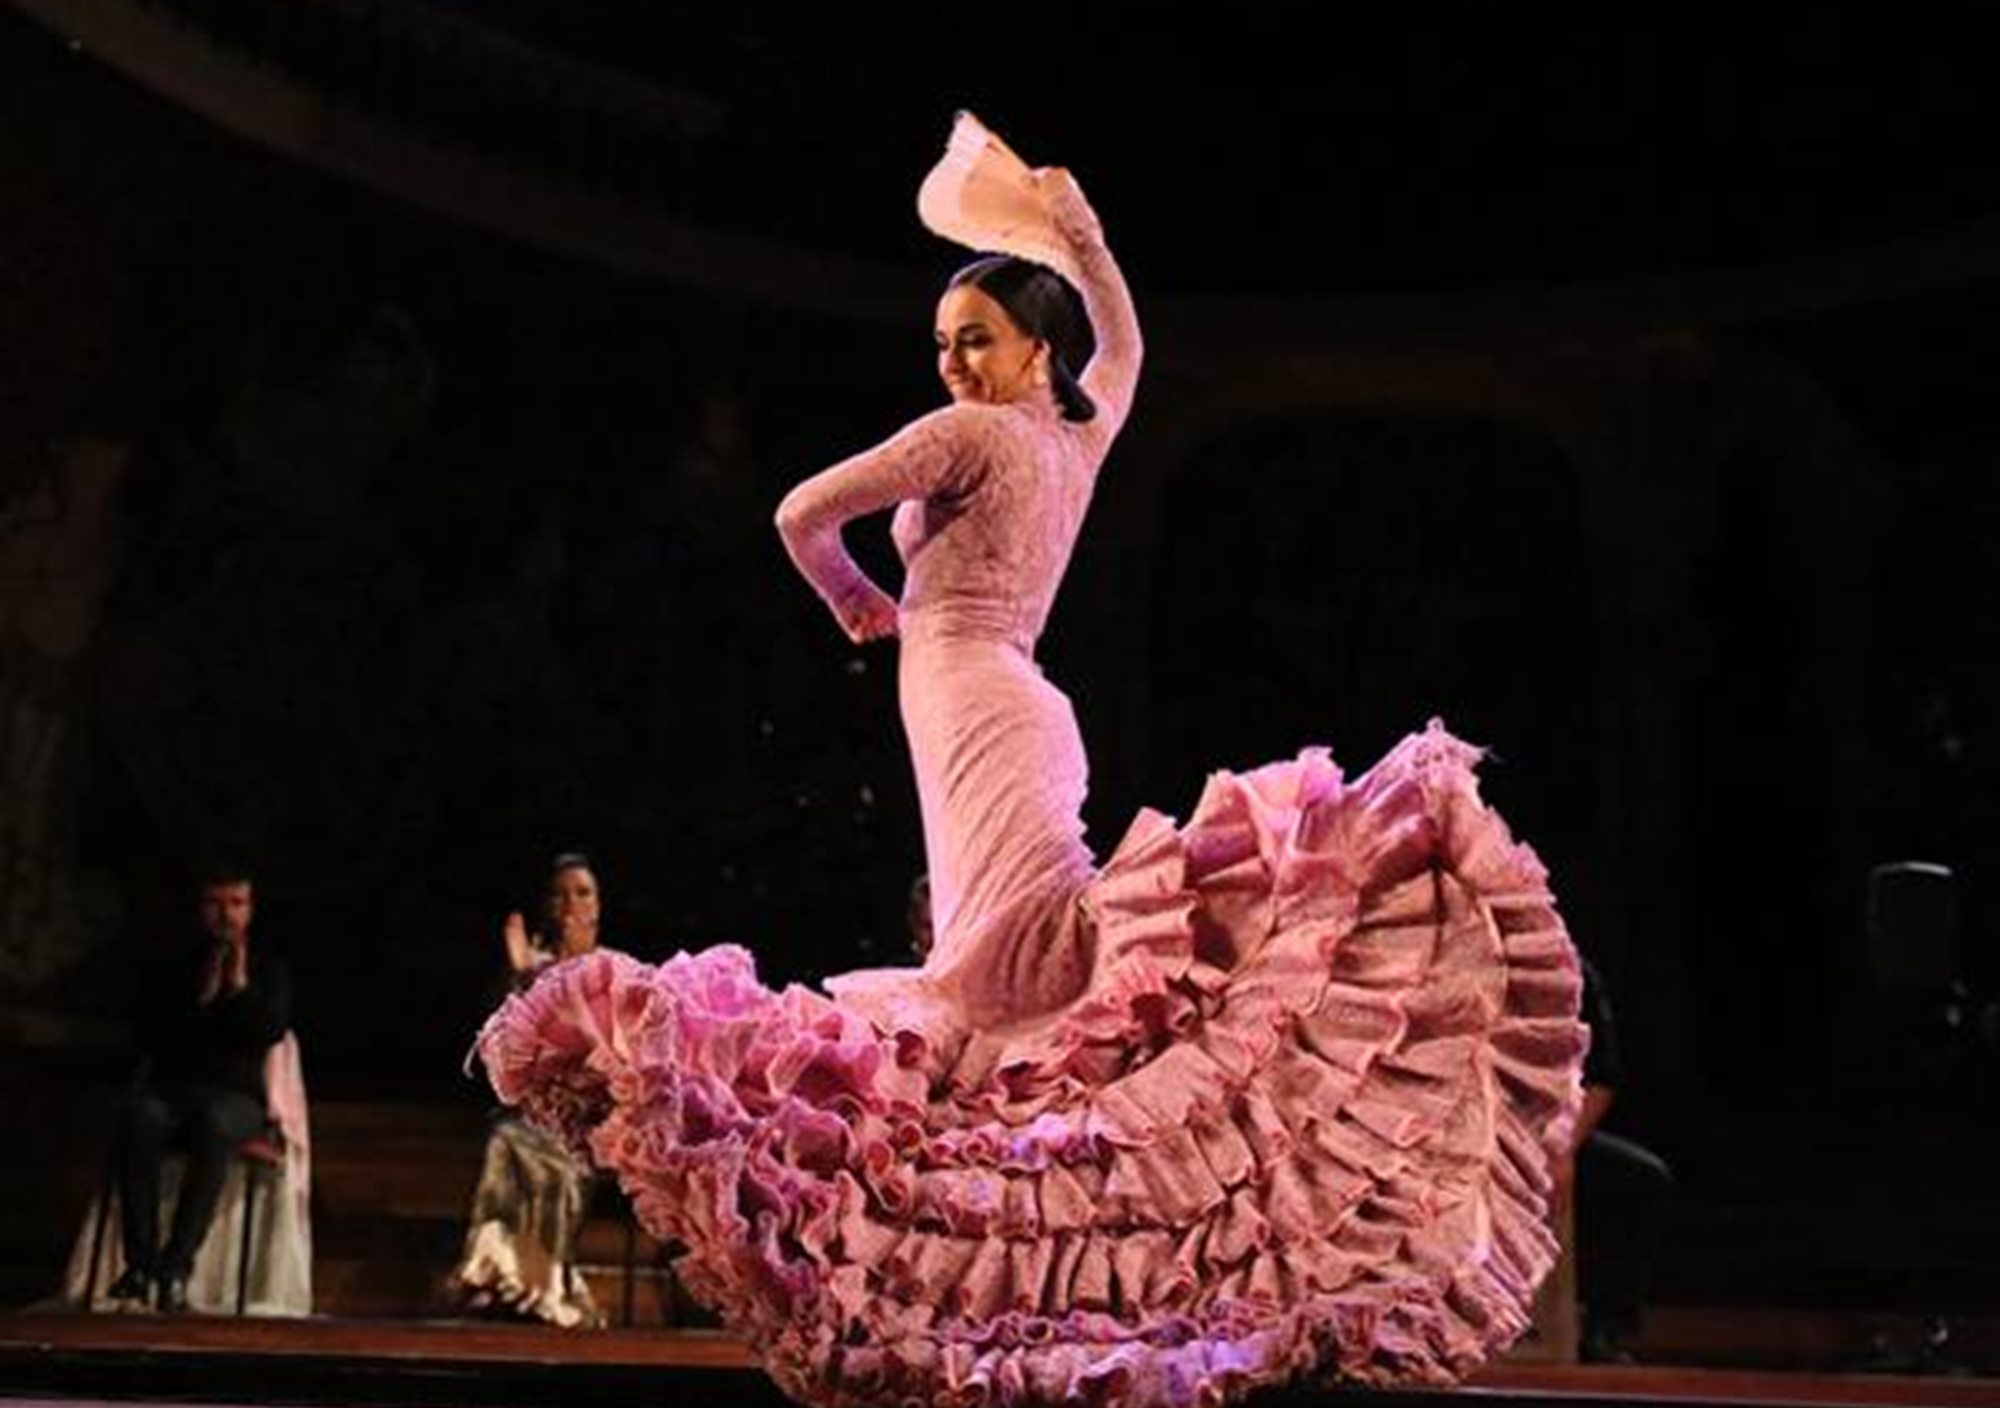 Spectacle Gran Gala Flamenco au Palau de la Musica barcelone billets reservation acheter réserver en ligne online